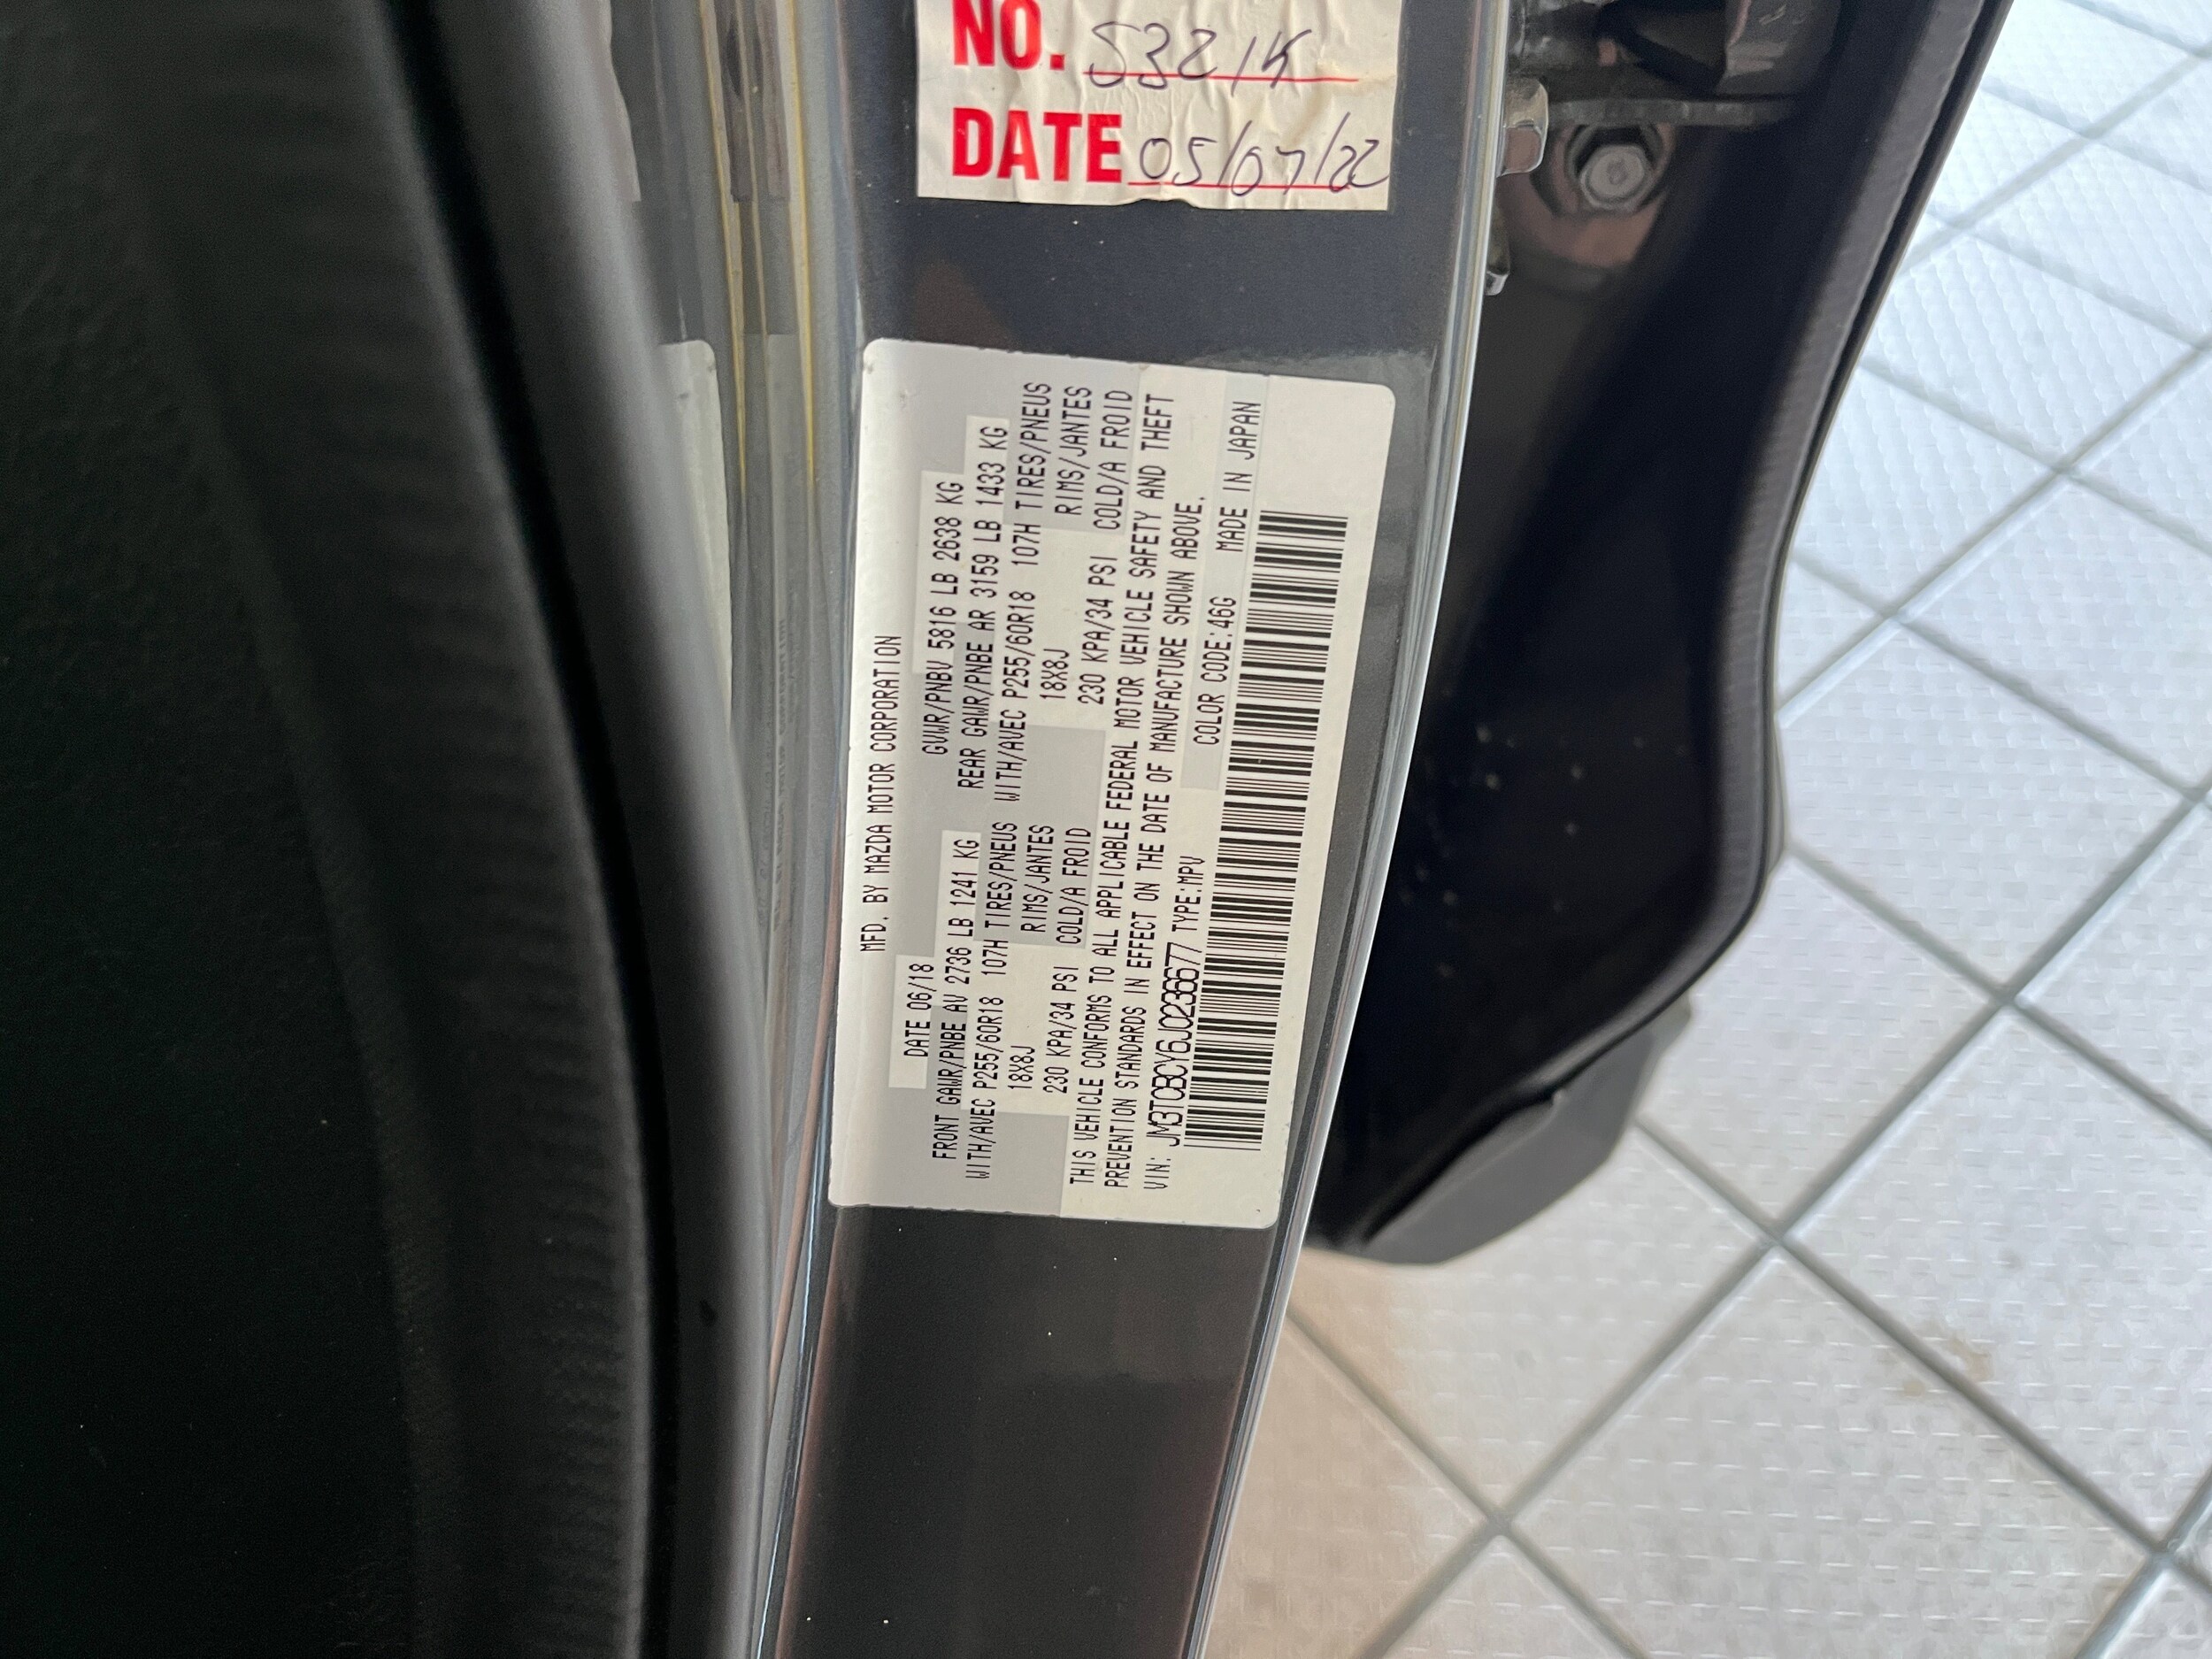 2018 Mazda CX-9 Touring 18